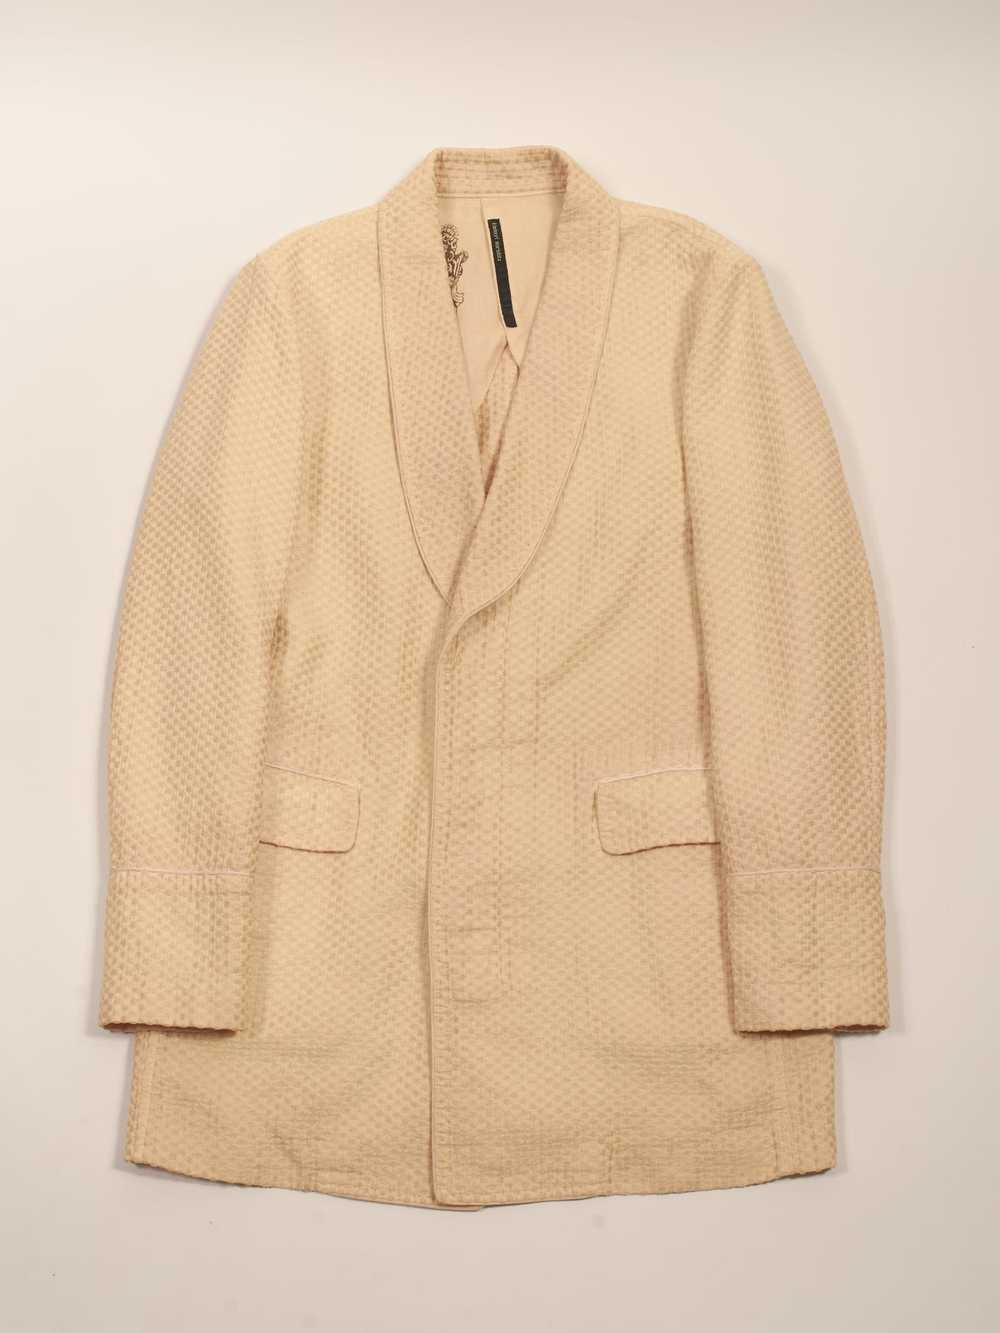 Kiminori Morishita Textured Linen Jacket - image 1